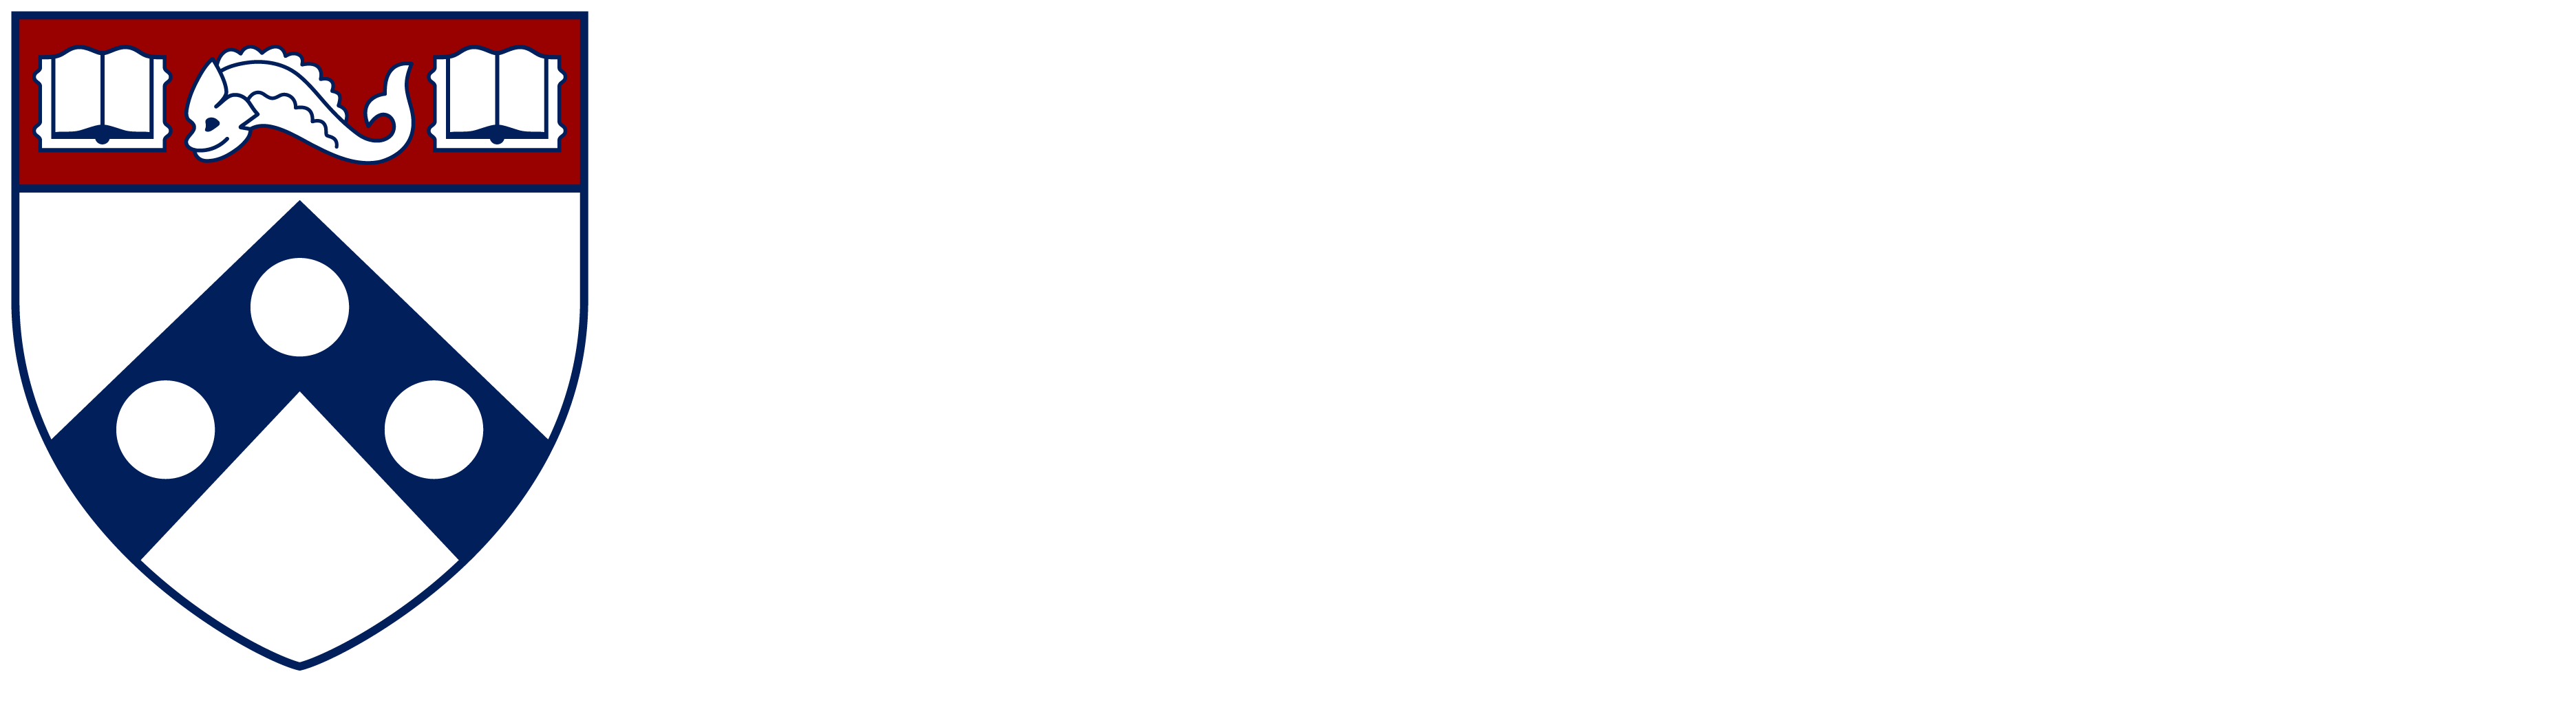 Penn GSE